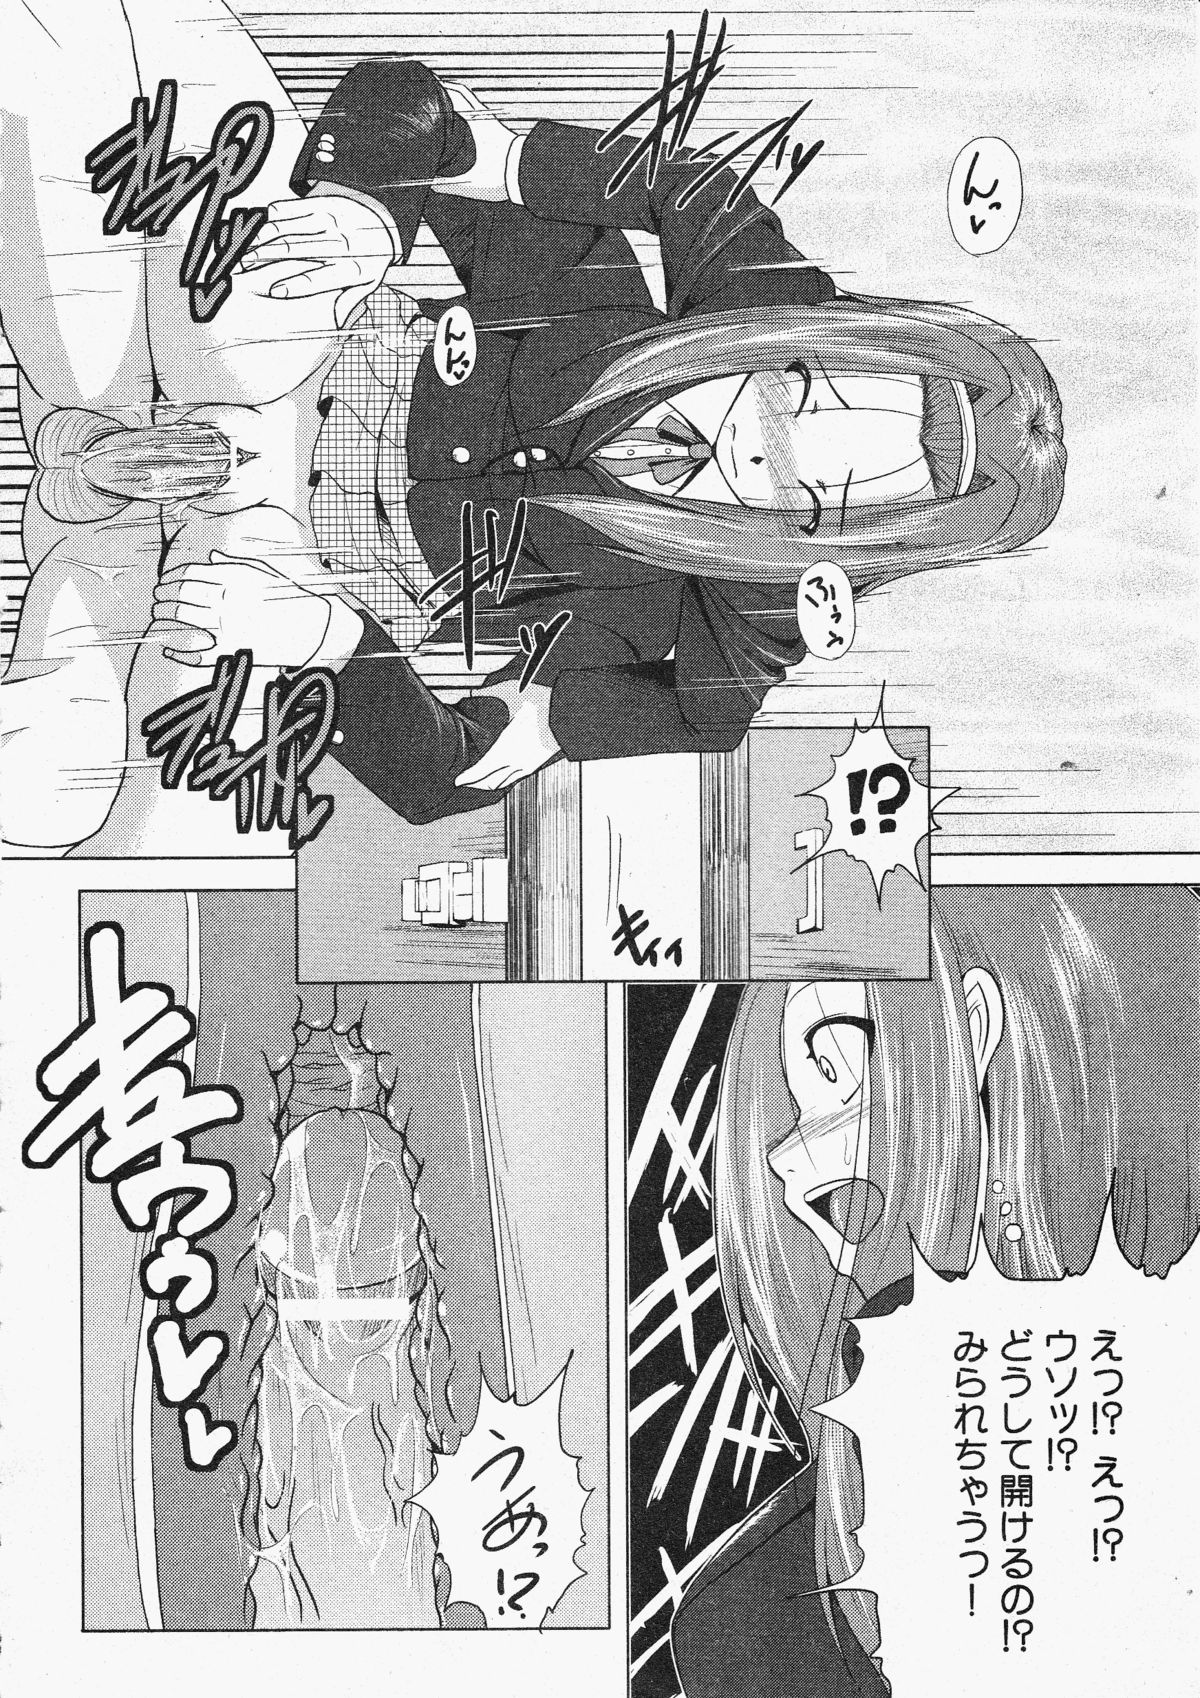 コミックXO 2009年11月号 Vol.42